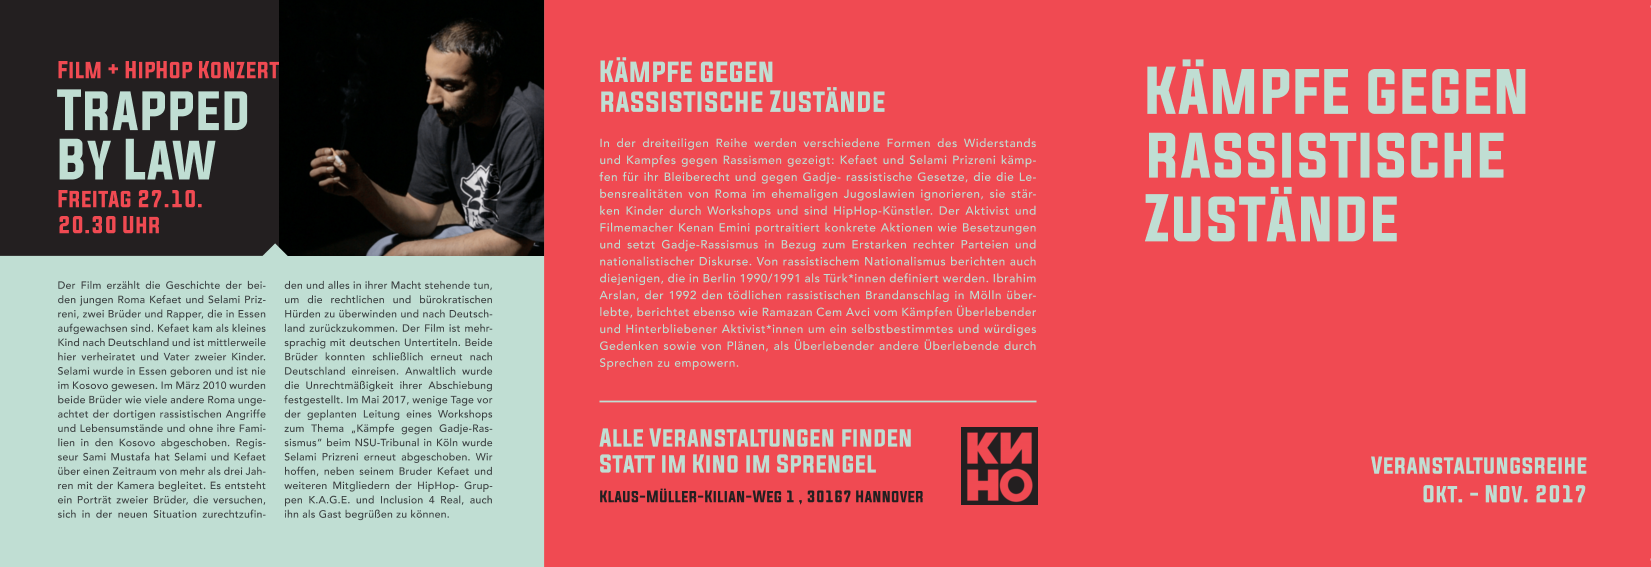 2017-09-30 20_18_52-Flyer Kämpfe gegen rassistische Zustände.pdf - PDF Studio Pro